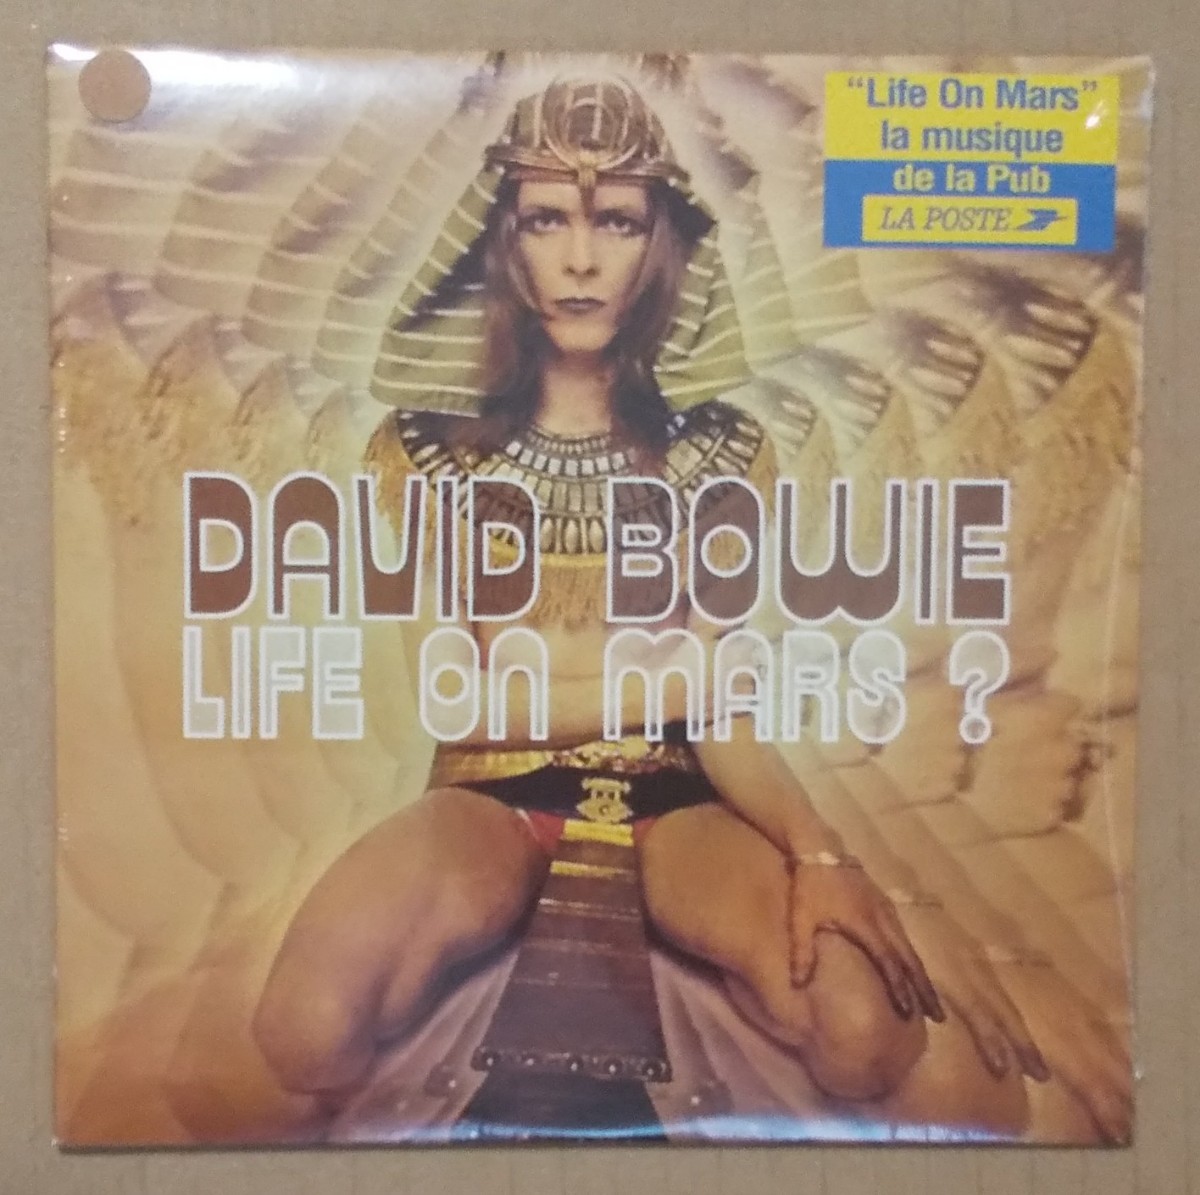 新品未開封稀少2曲入りCDS David Bowie/Life On Mars? 仏EMI 紙ジャケ